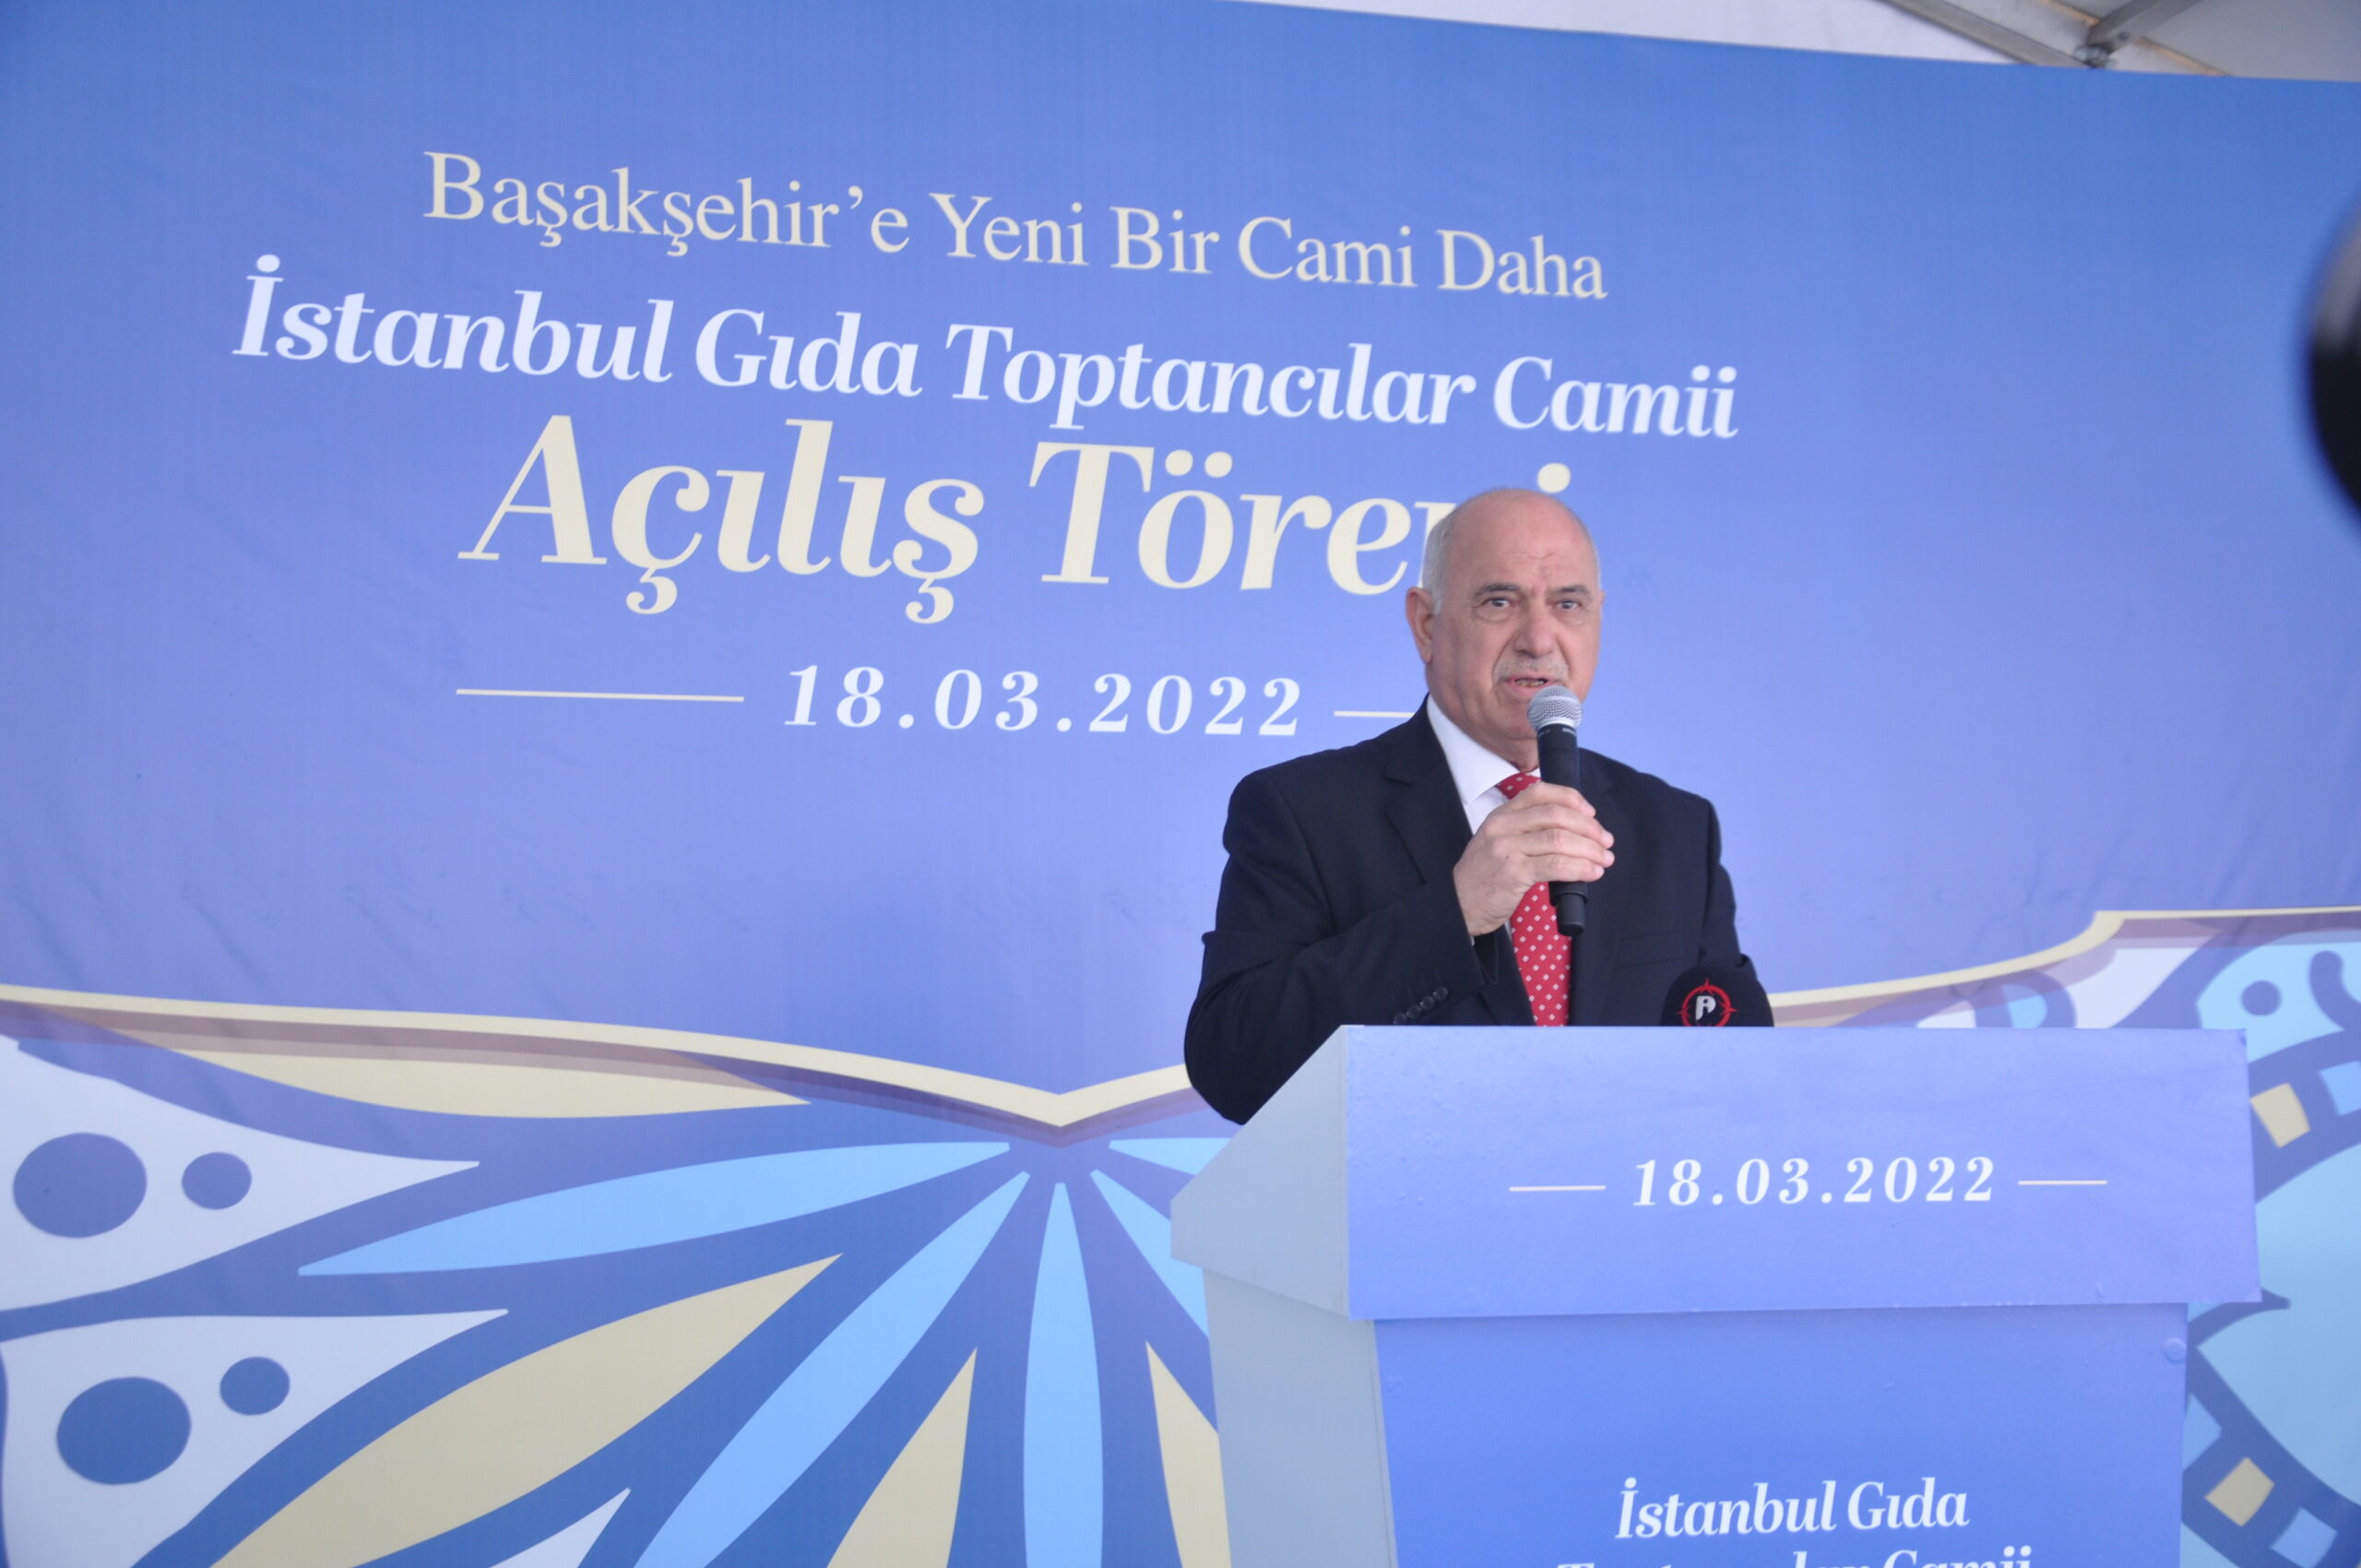 İGTOT (İstanbul Gıda Toptancılar Çarşısı) Cami’nin Açılışı Mütevazi Bir Törenle Gerçekleşti.